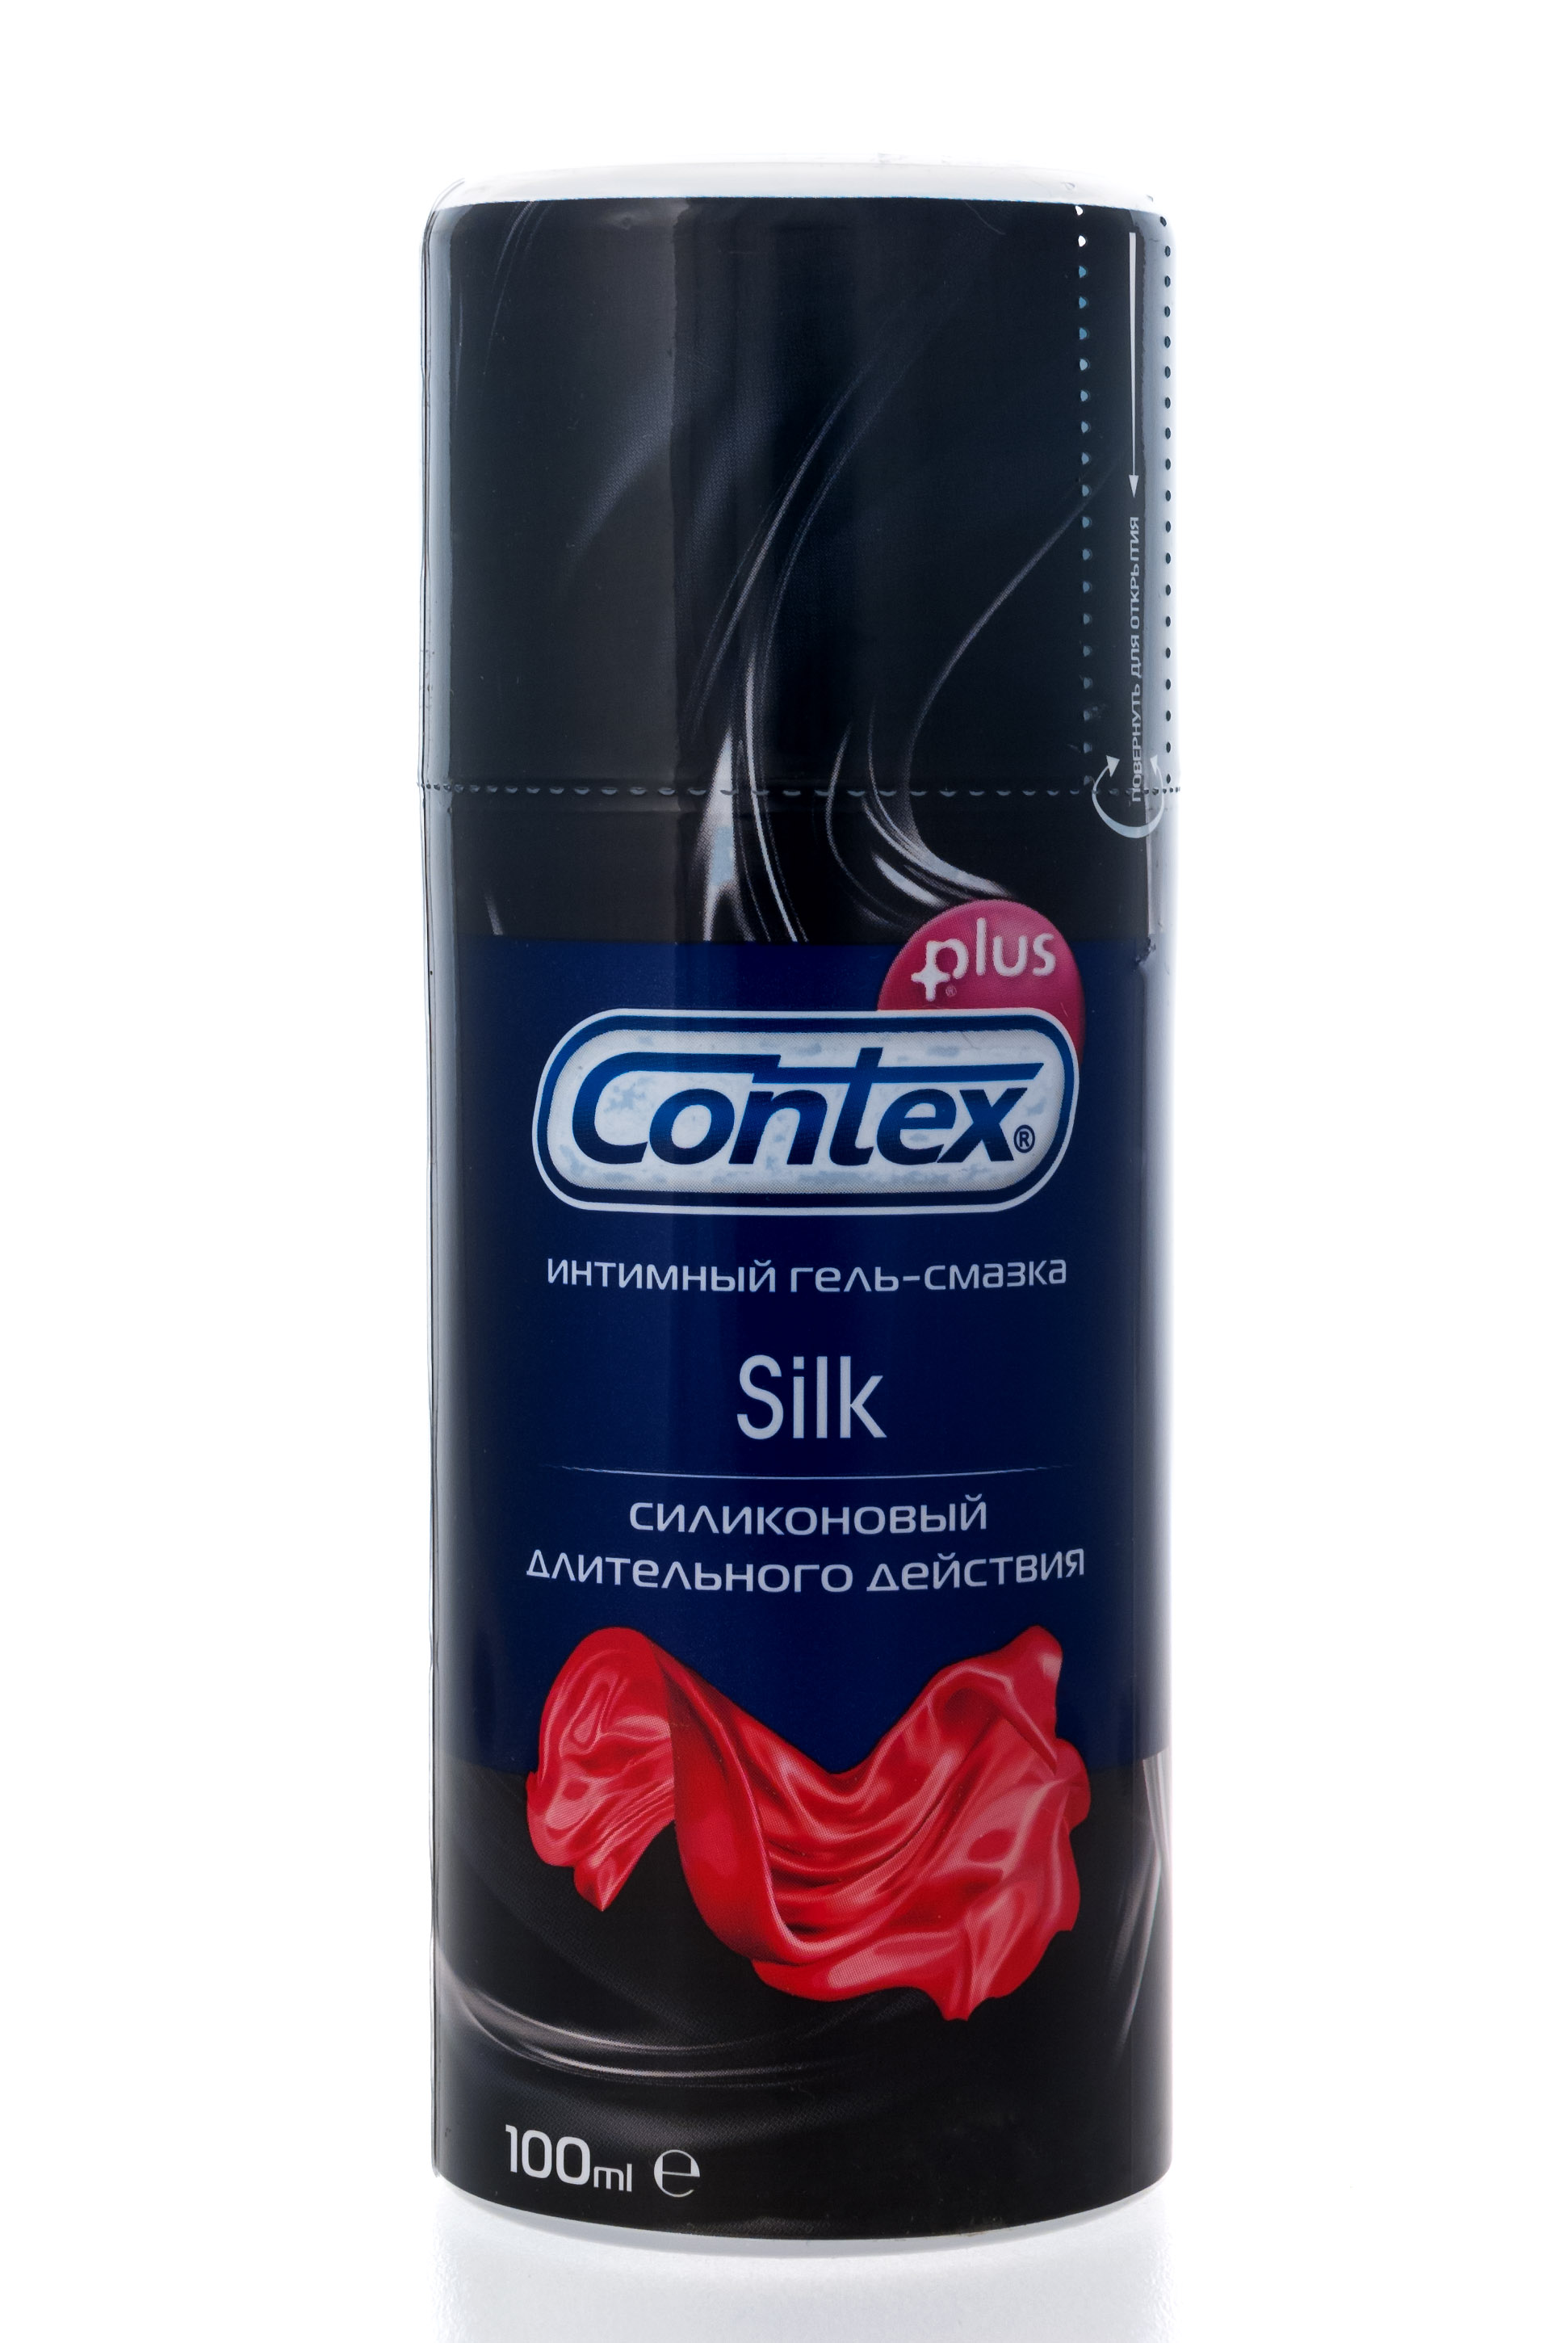 Contex Интимный гель-смазка Silk, 100мл (Contex, Гель-смазка) contex интимный гель смазка green 100 мл contex гель смазка